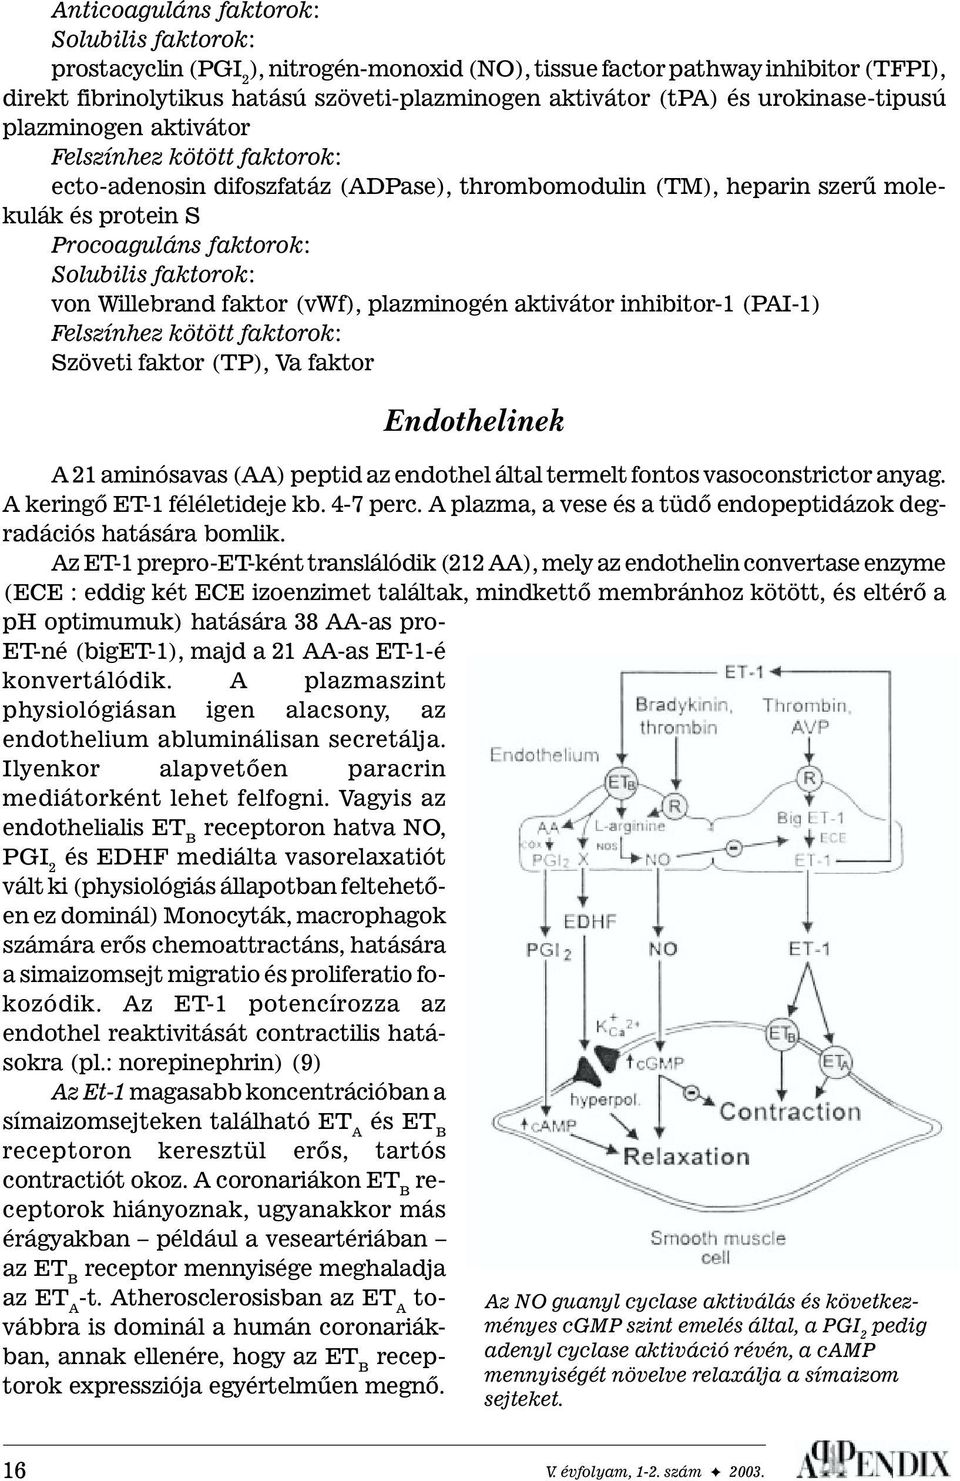 faktorok: von Willebrand faktor (vwf), plazminogén aktivátor inhibitor-1 (PAI-1) elszínhez kötött faktorok: Szöveti faktor (TP), Va faktor Endothelinek A 21 aminósavas (AA) peptid az endothel által